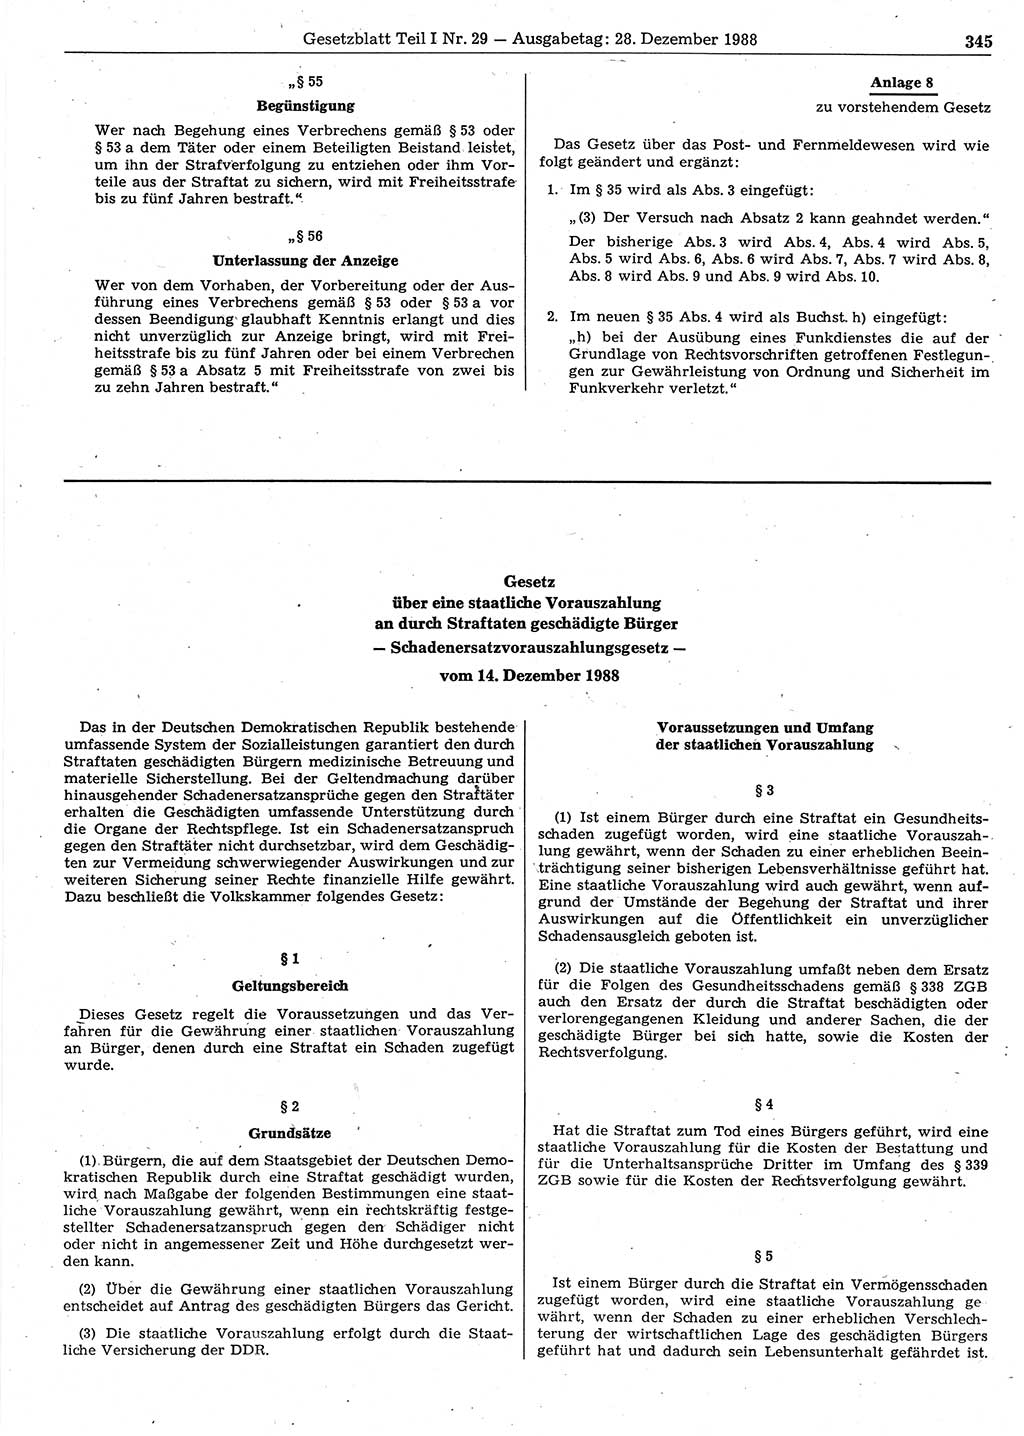 Gesetzblatt (GBl.) der Deutschen Demokratischen Republik (DDR) Teil Ⅰ 1988, Seite 345 (GBl. DDR Ⅰ 1988, S. 345)